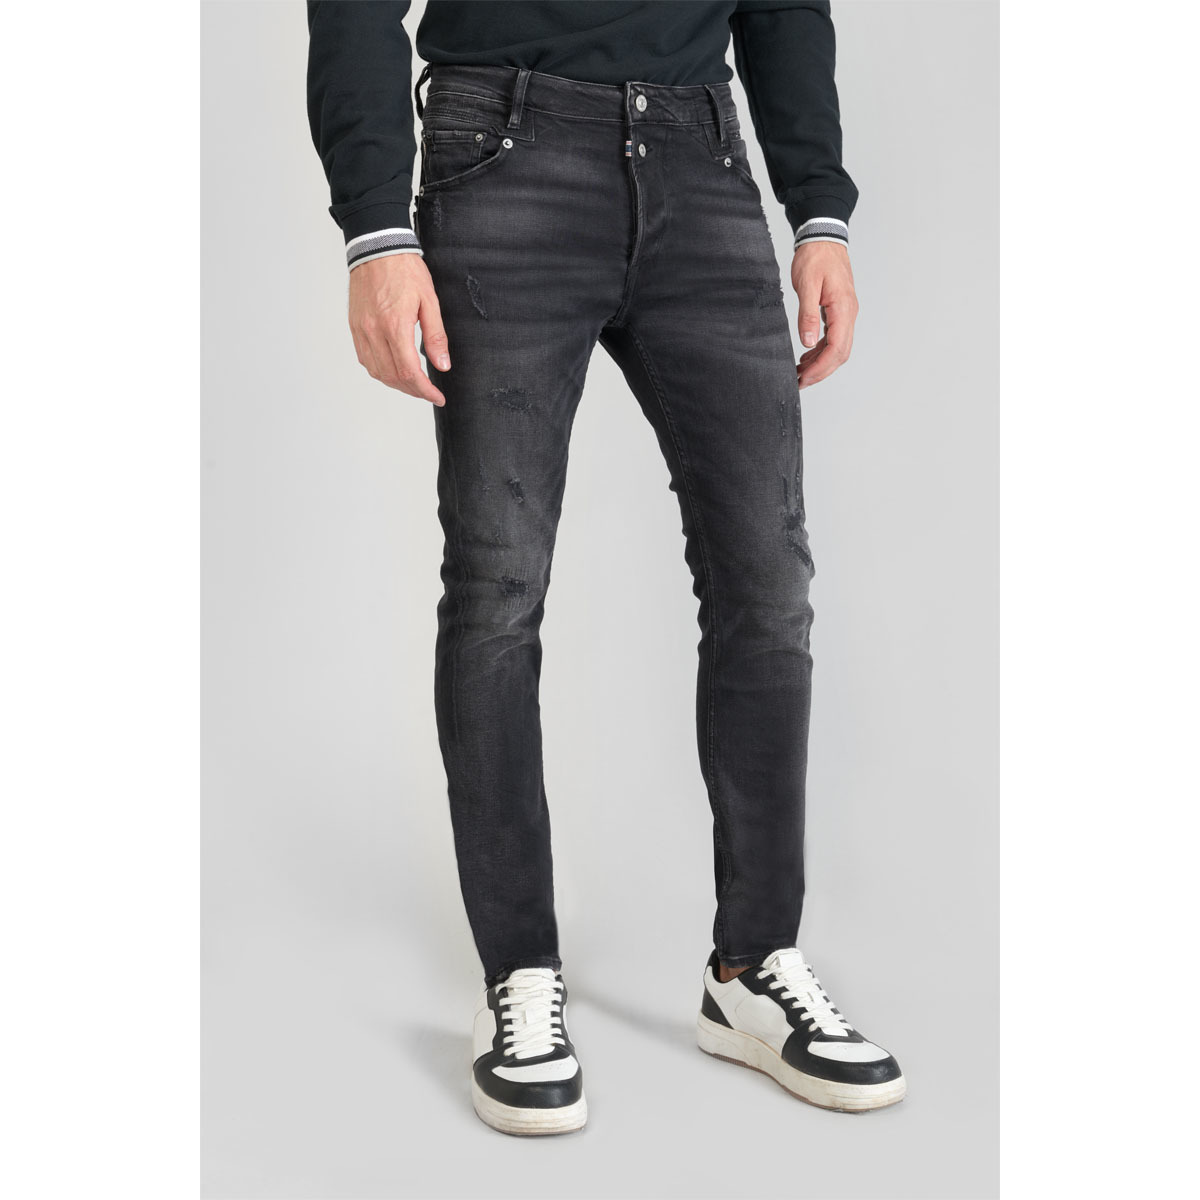 Le Temps des Cerises Noir Riff 900/16 tapered jeans destroy noir qfnEohcs